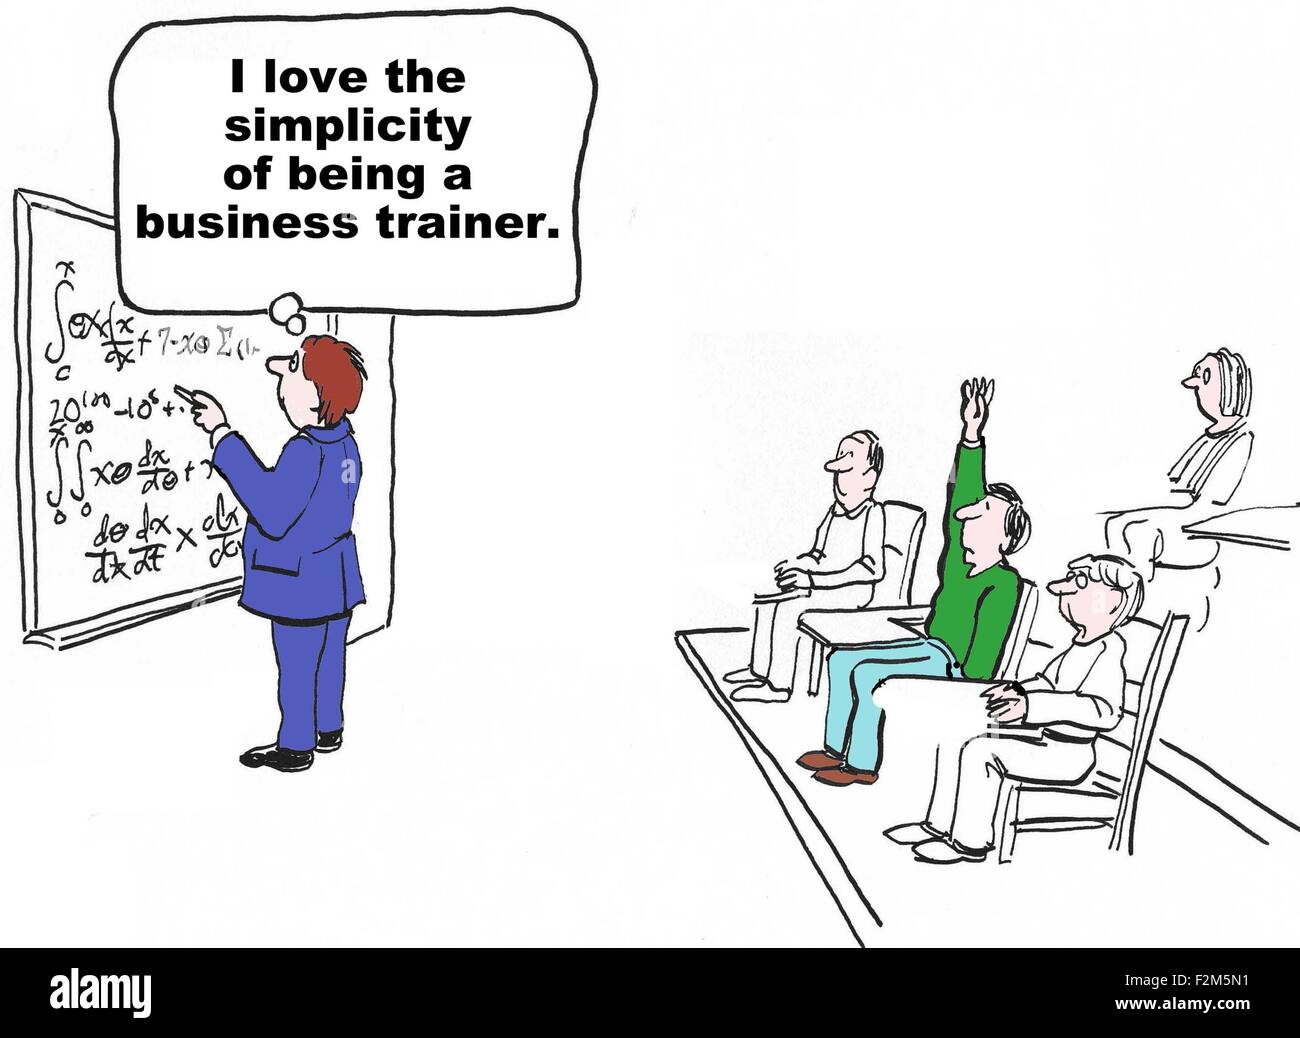 Business-Cartoon des Trainers am Brett mit komplexen Formeln.  Er denkt, "Ich liebe die Einfachheit des Seins ein Business-Trainer" Stockfoto